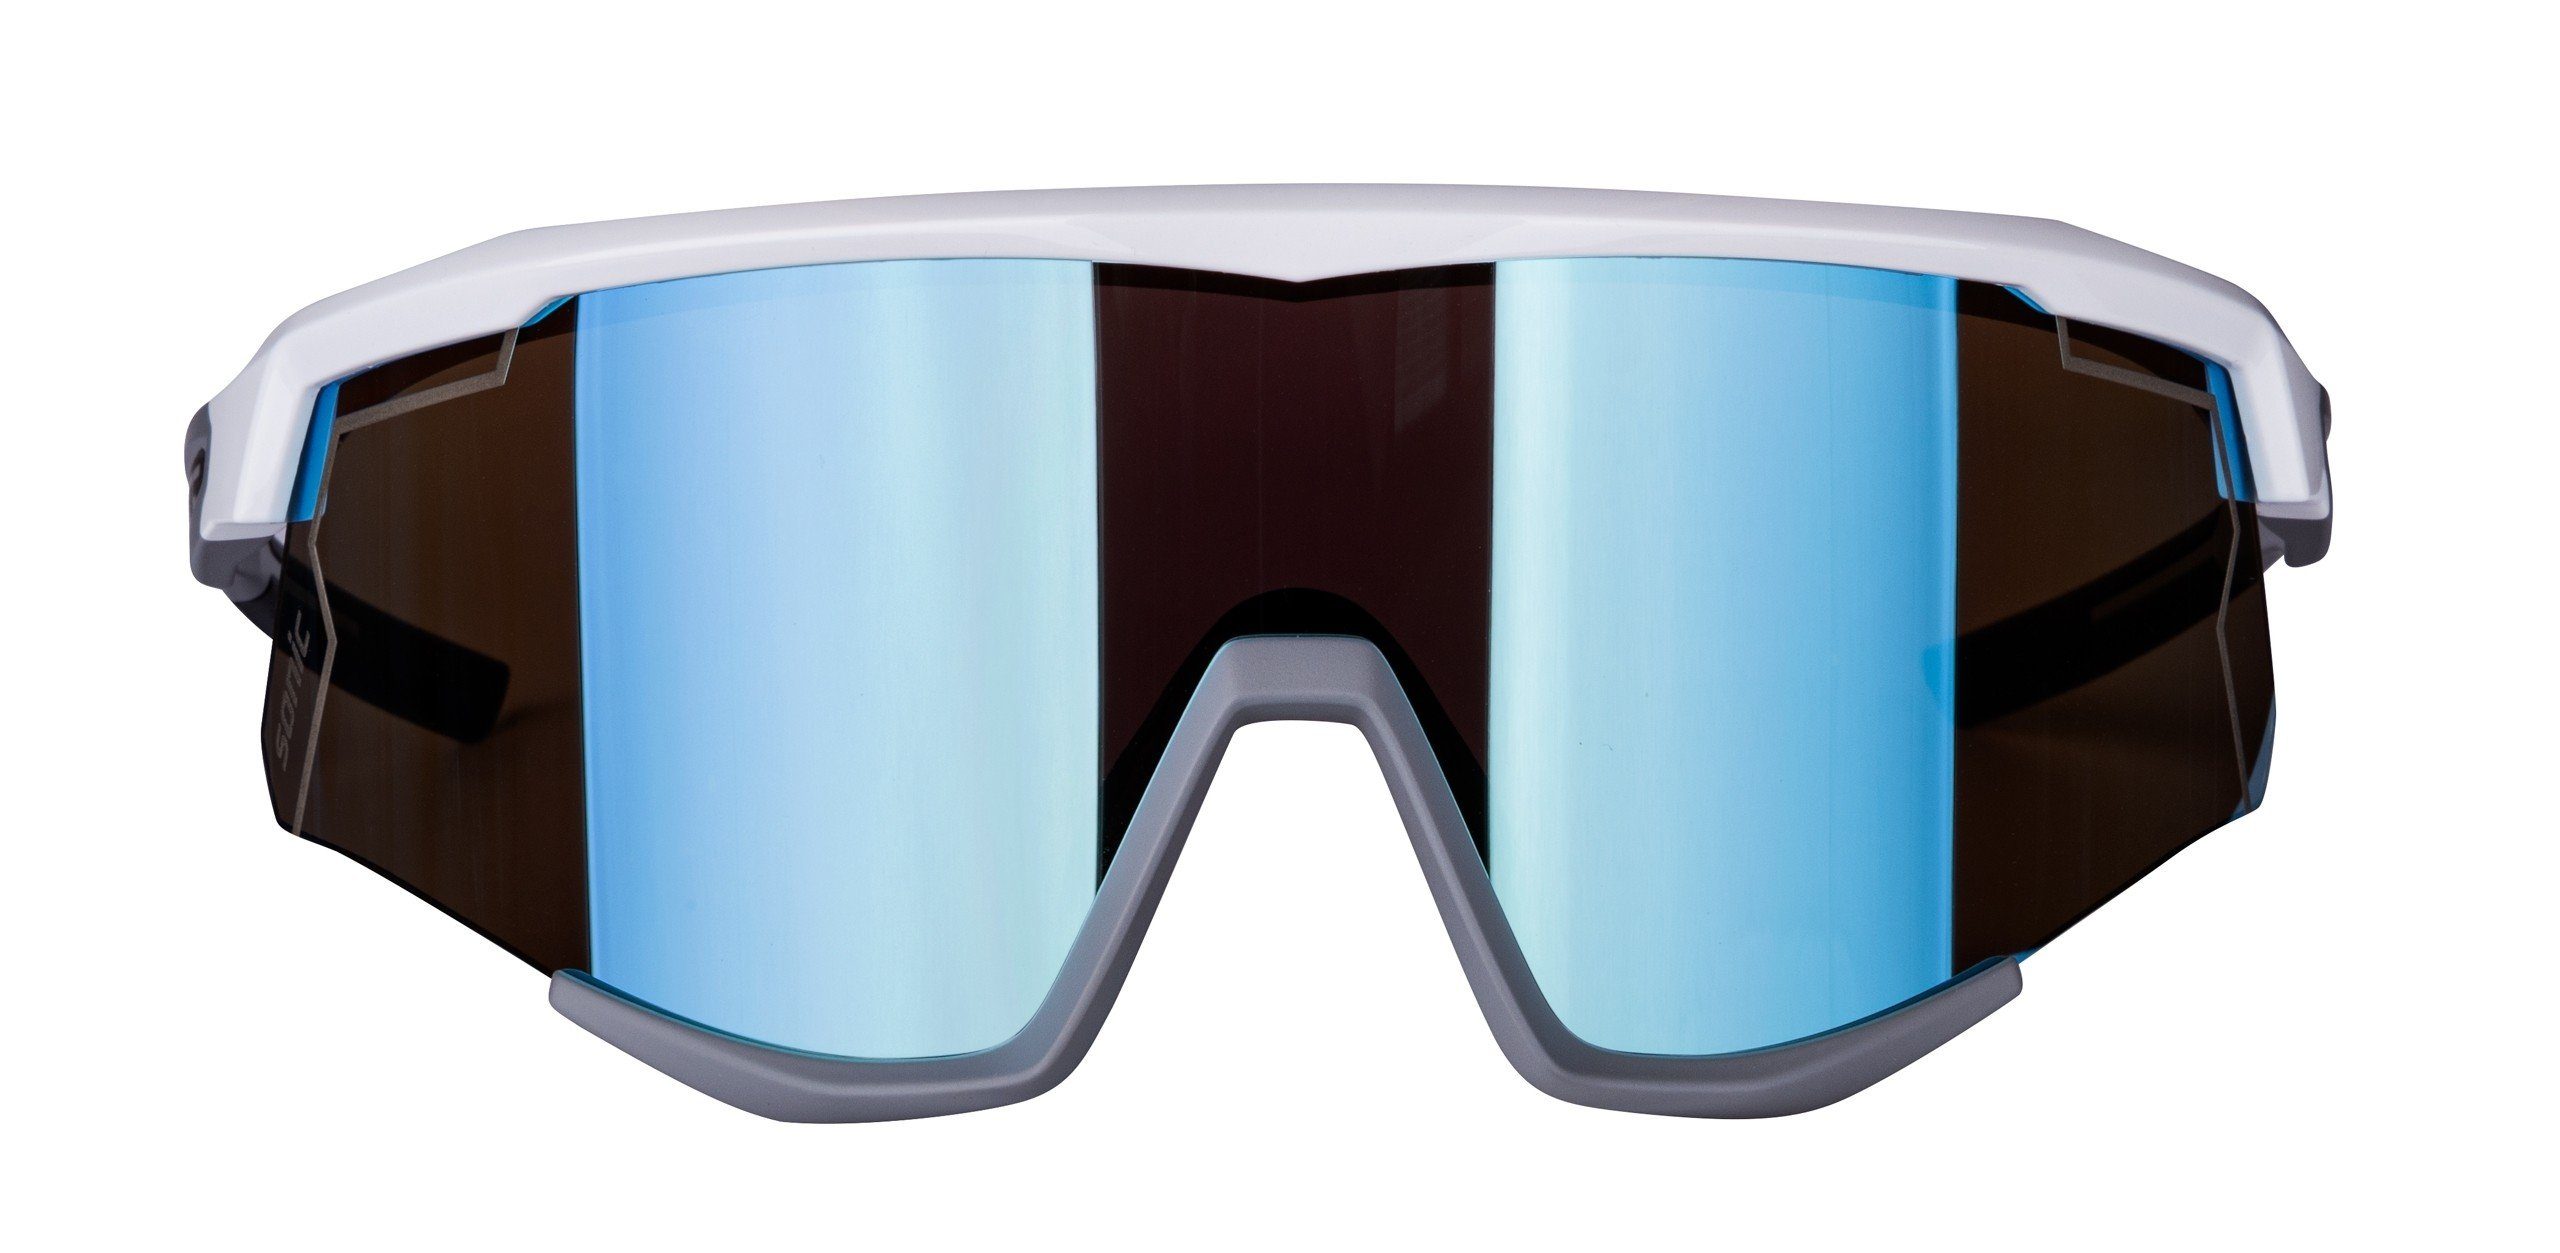 SONIC weiß-grau blau Fahrradbrille Sonnenbrille Scheibe verspiegelte FORCE FORCE